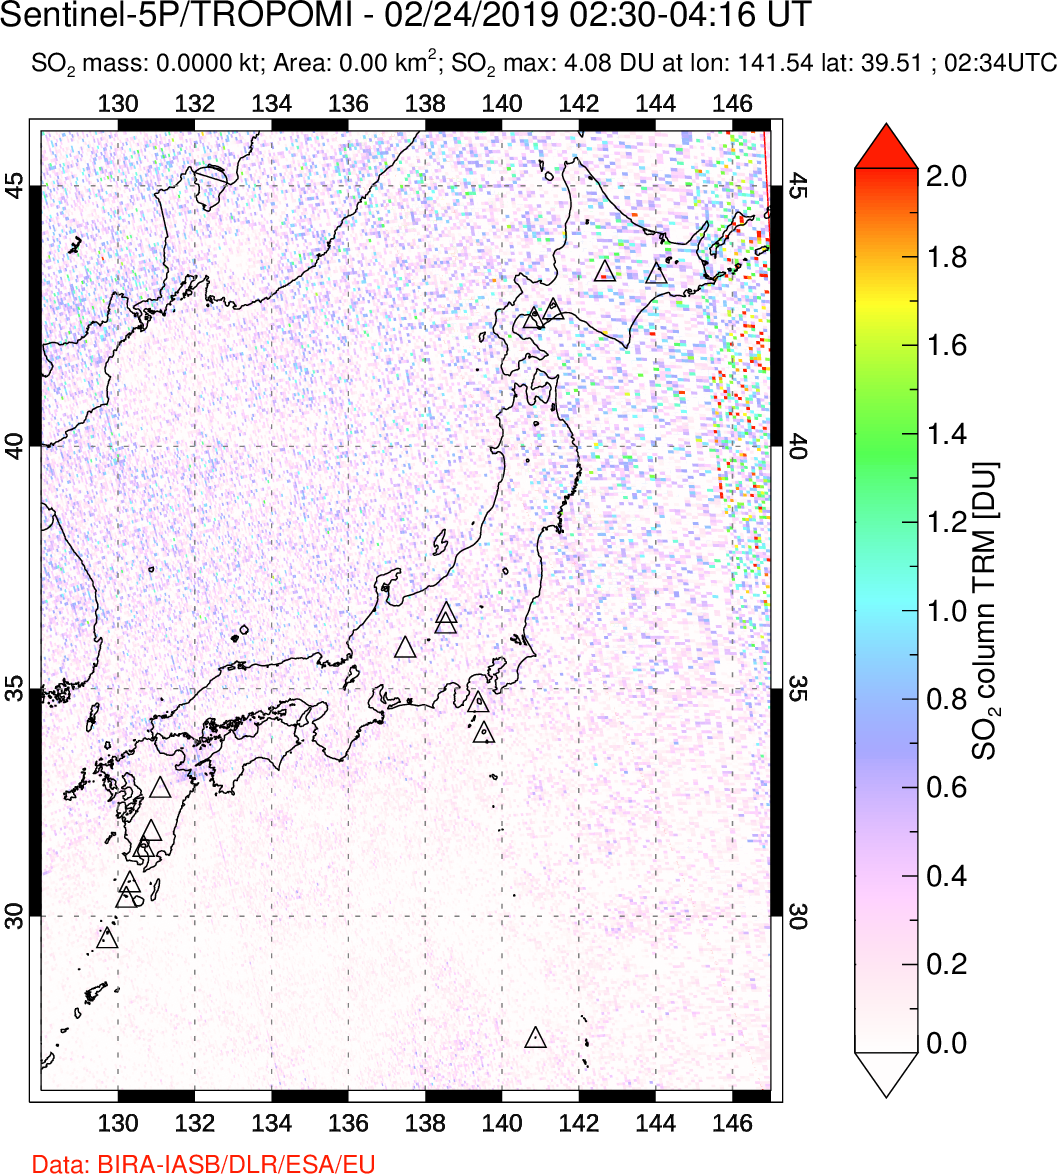 A sulfur dioxide image over Japan on Feb 24, 2019.